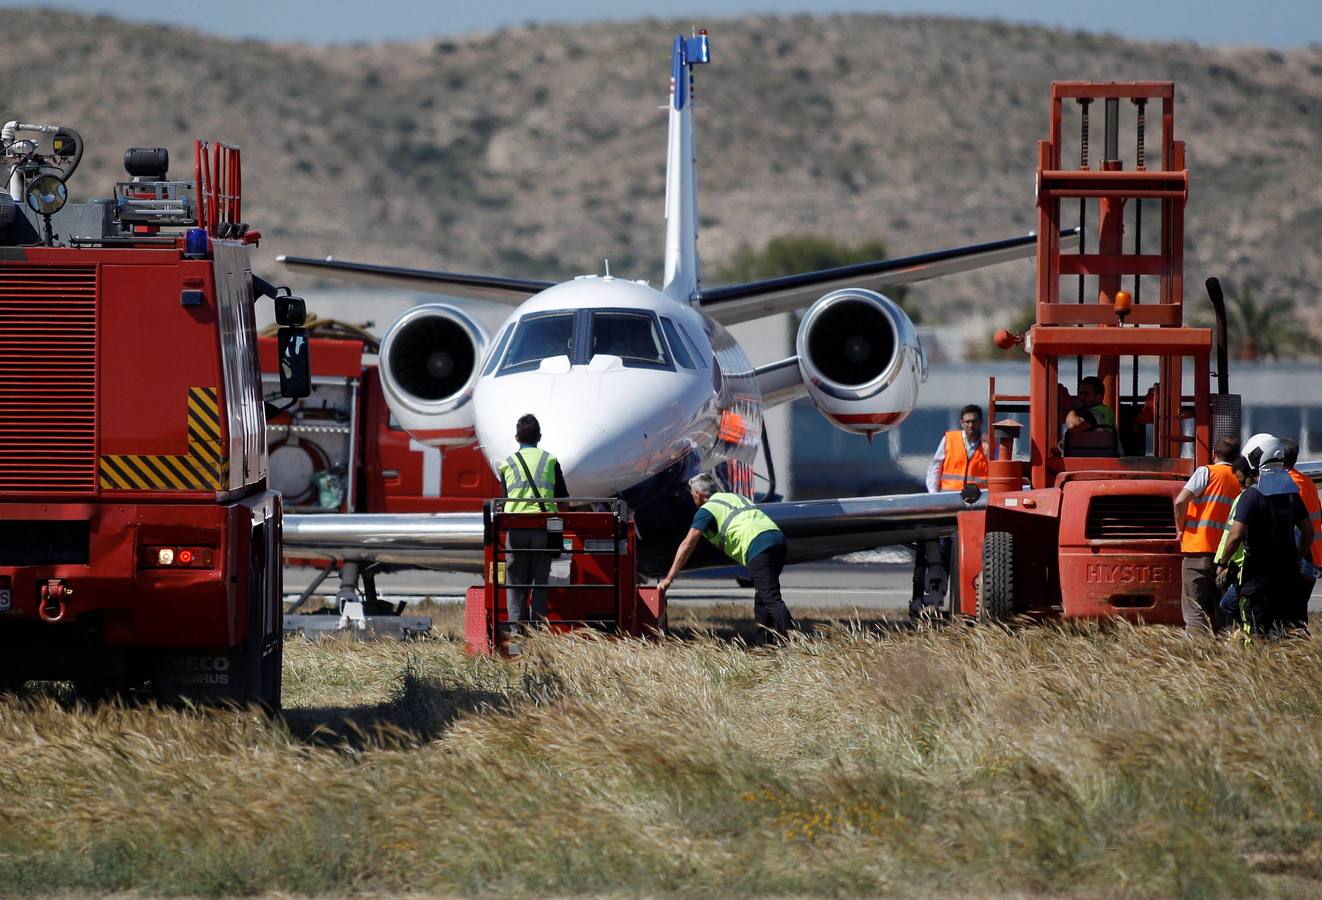 El aeropuerto de Alicante ha recuperado la normalidad a las 17.40 horas de este jueves, 30 de mayo, después de que se haya visto obligado a cancelar todas las operaciones de aterrizaje y despegue por la salida de pista de una avioneta privada. El suceso se ha registrado a las 14.00 horas y los dos ocupantes han resultado ilesos.